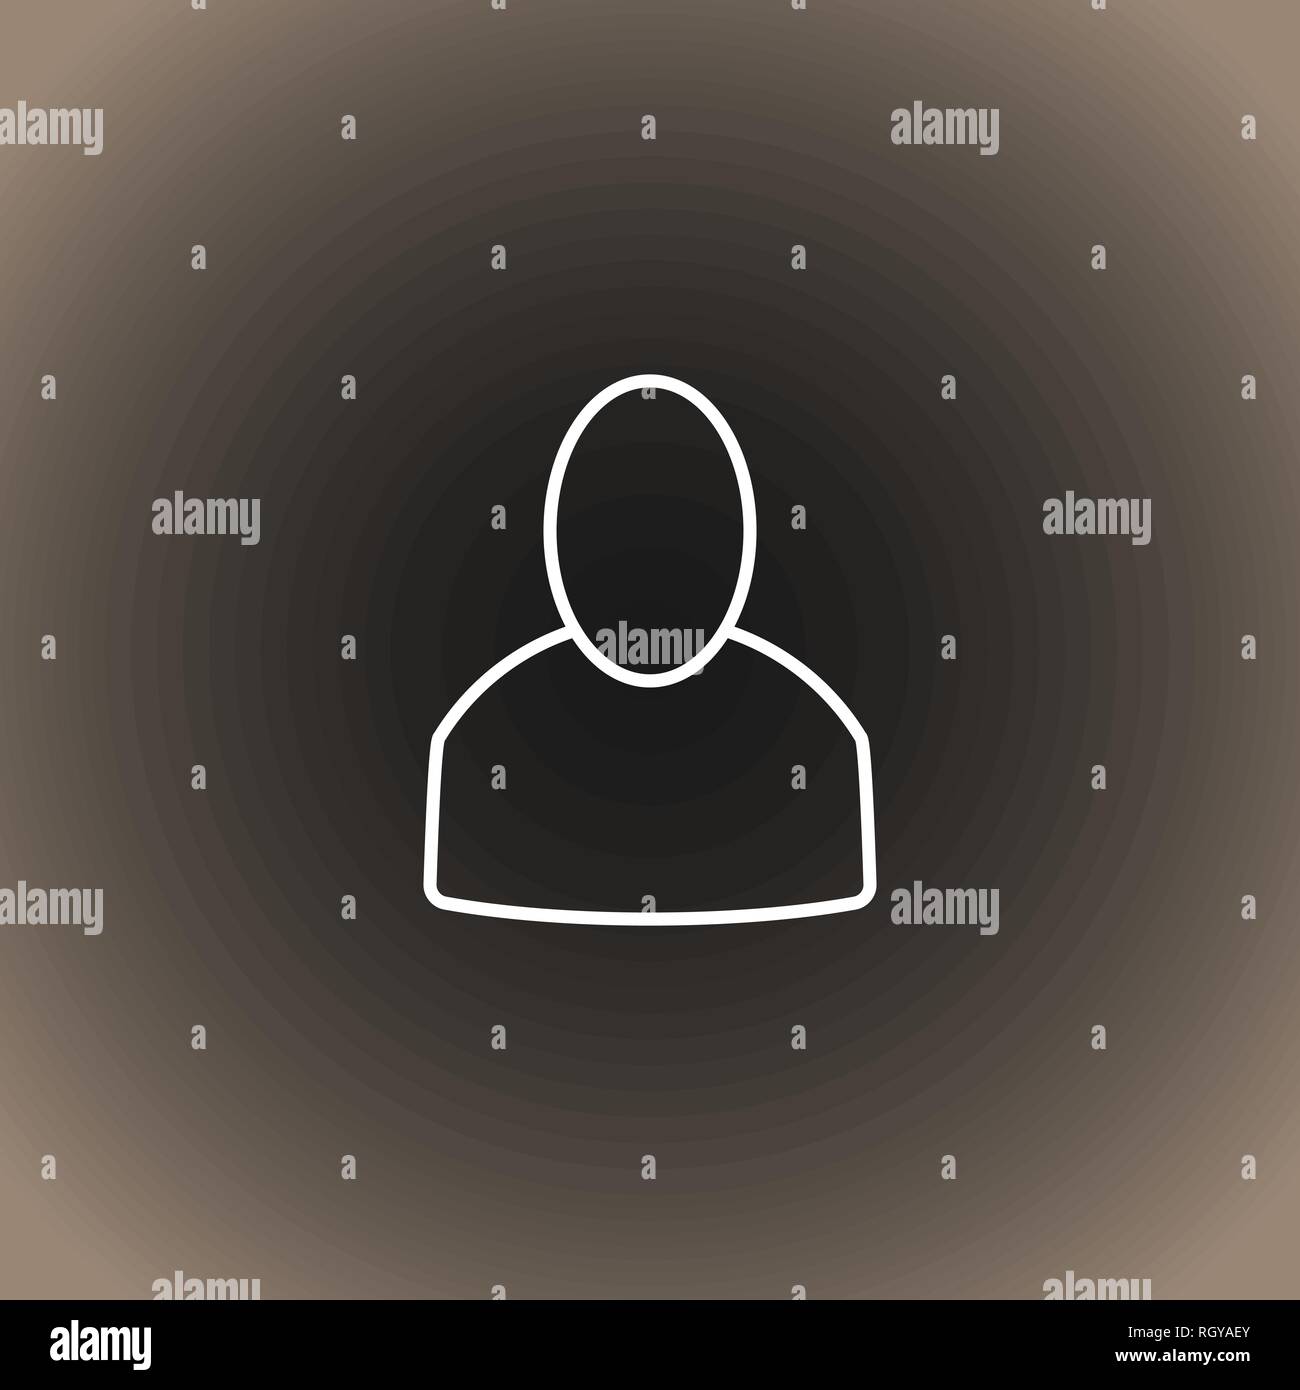 Profilo utente icona sul nero/grigio scuro e beige gradiente dello sfondo. Illustrazione vettoriale EPS10. Illustrazione Vettoriale